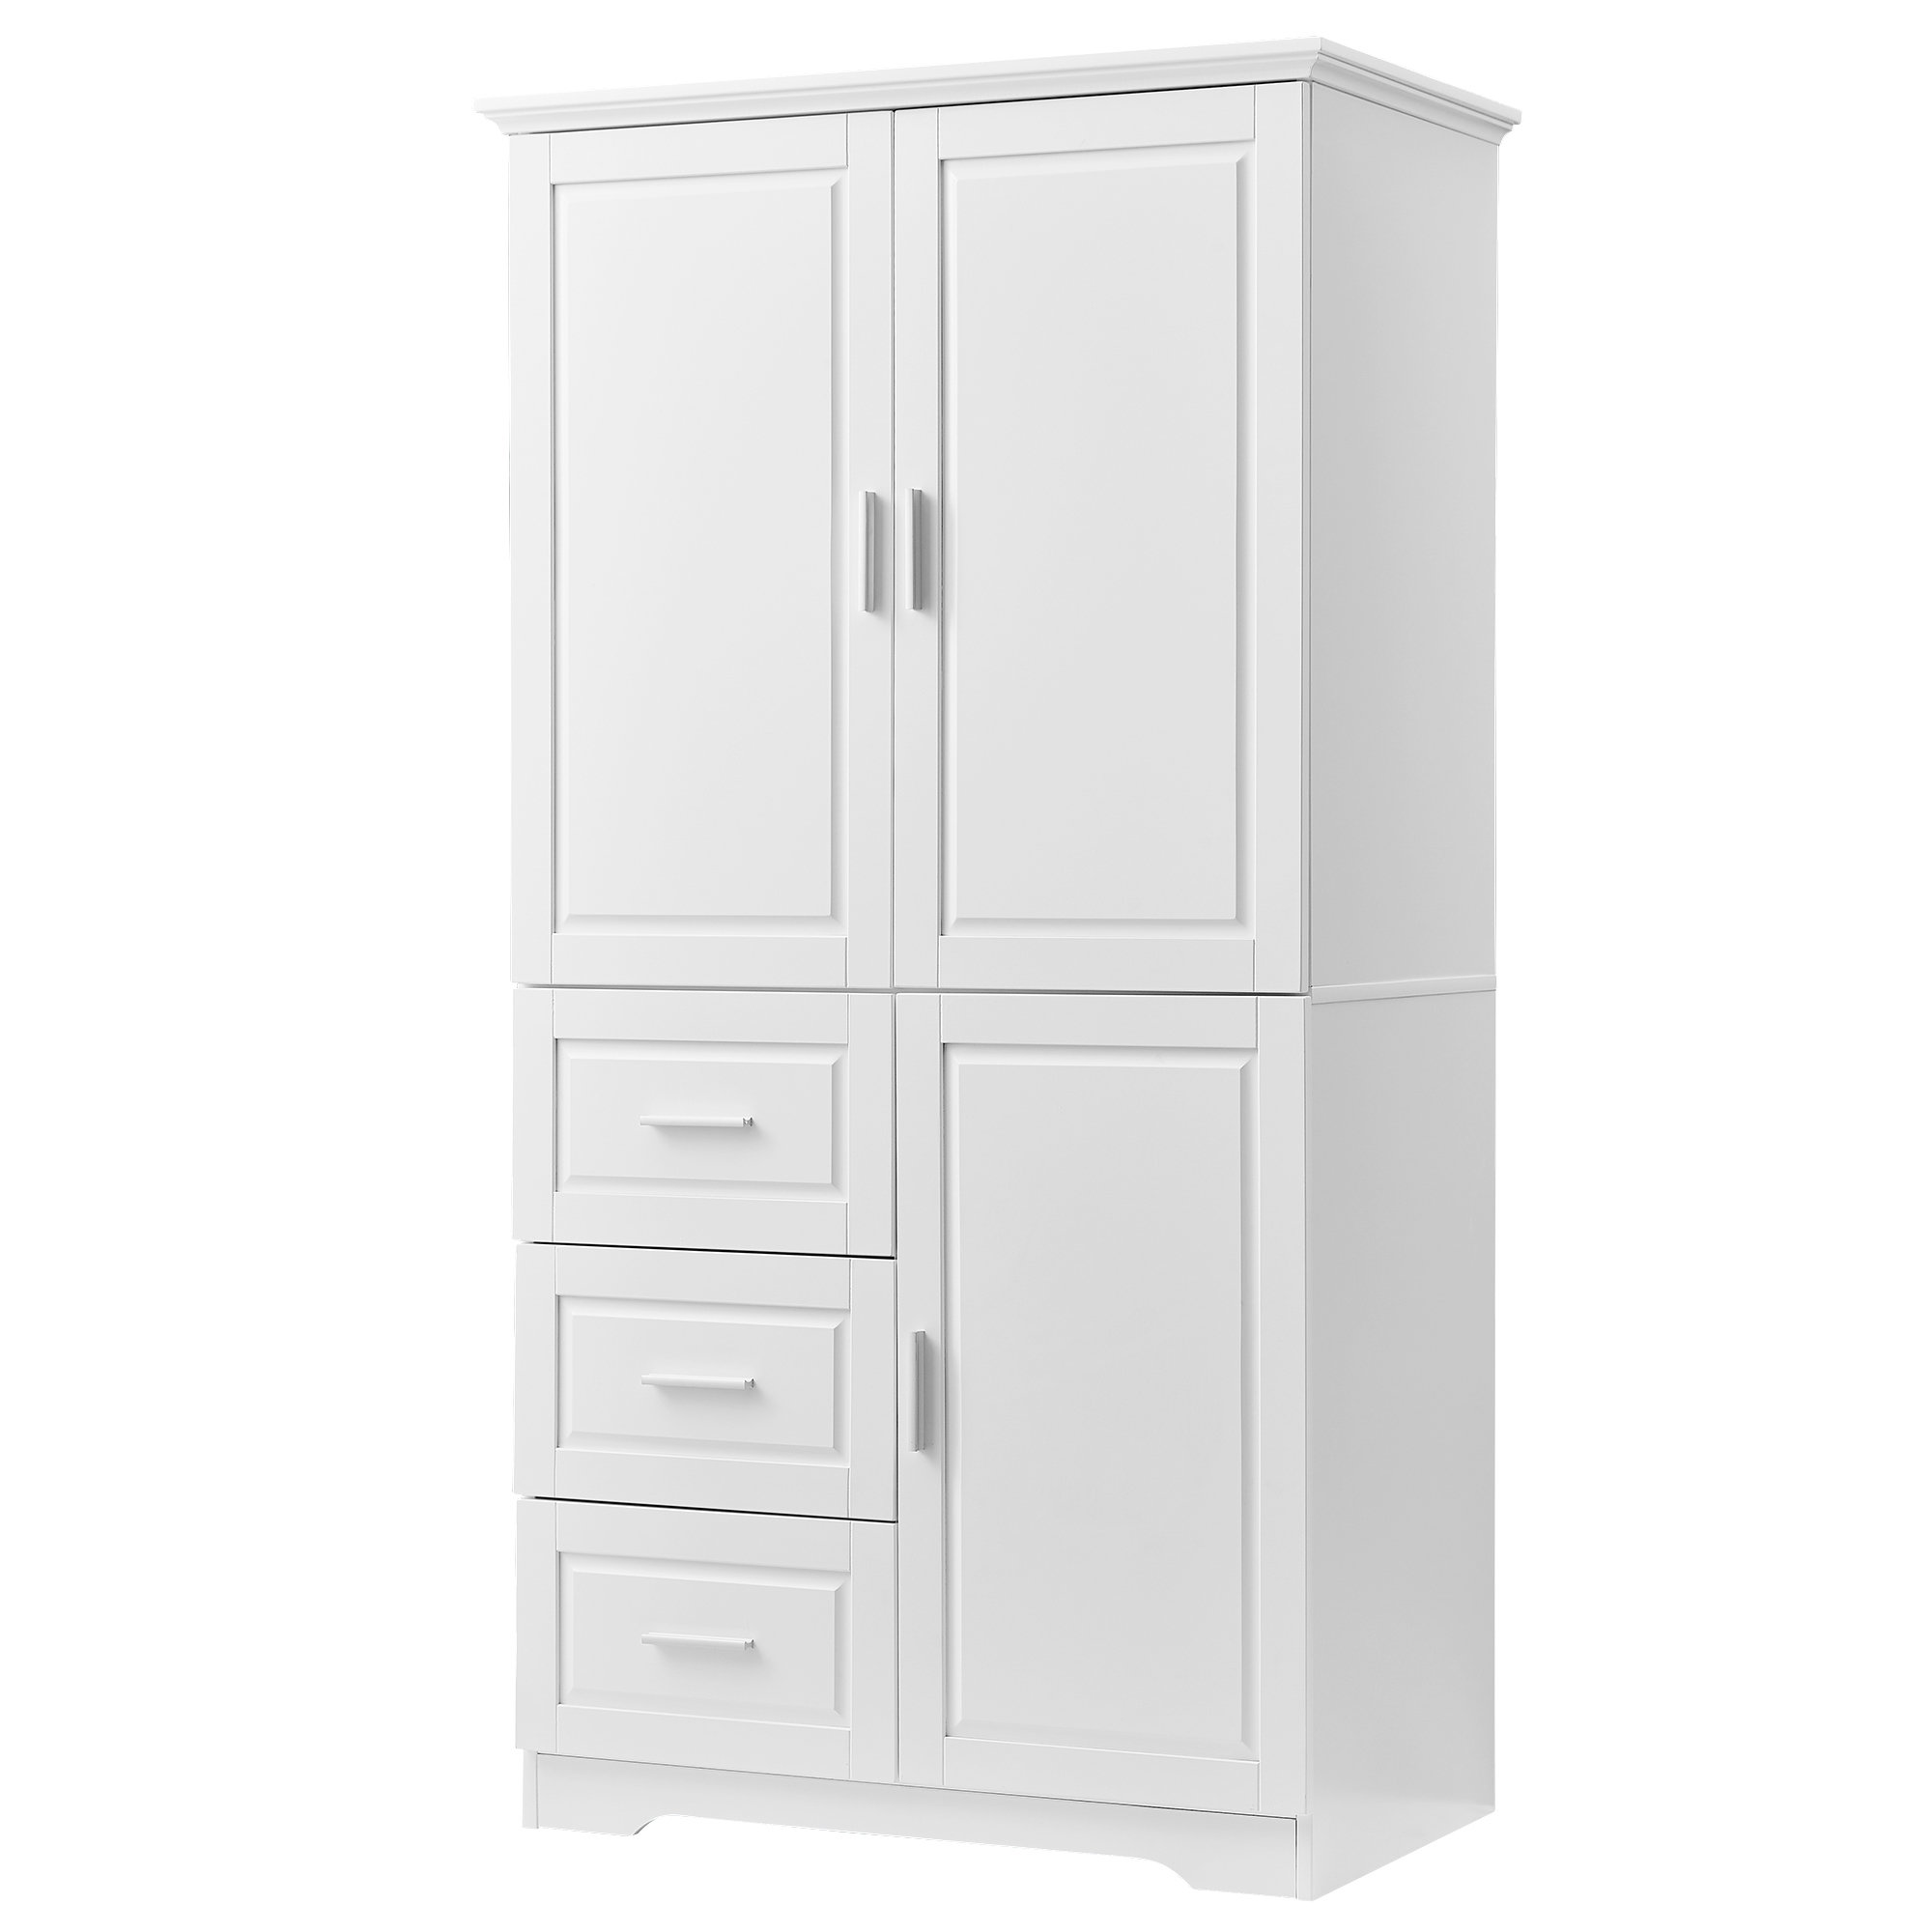 https://assets.wfcdn.com/im/08970438/compr-r85/2392/239230827/wilfredo-freestanding-linen-cabinet.jpg